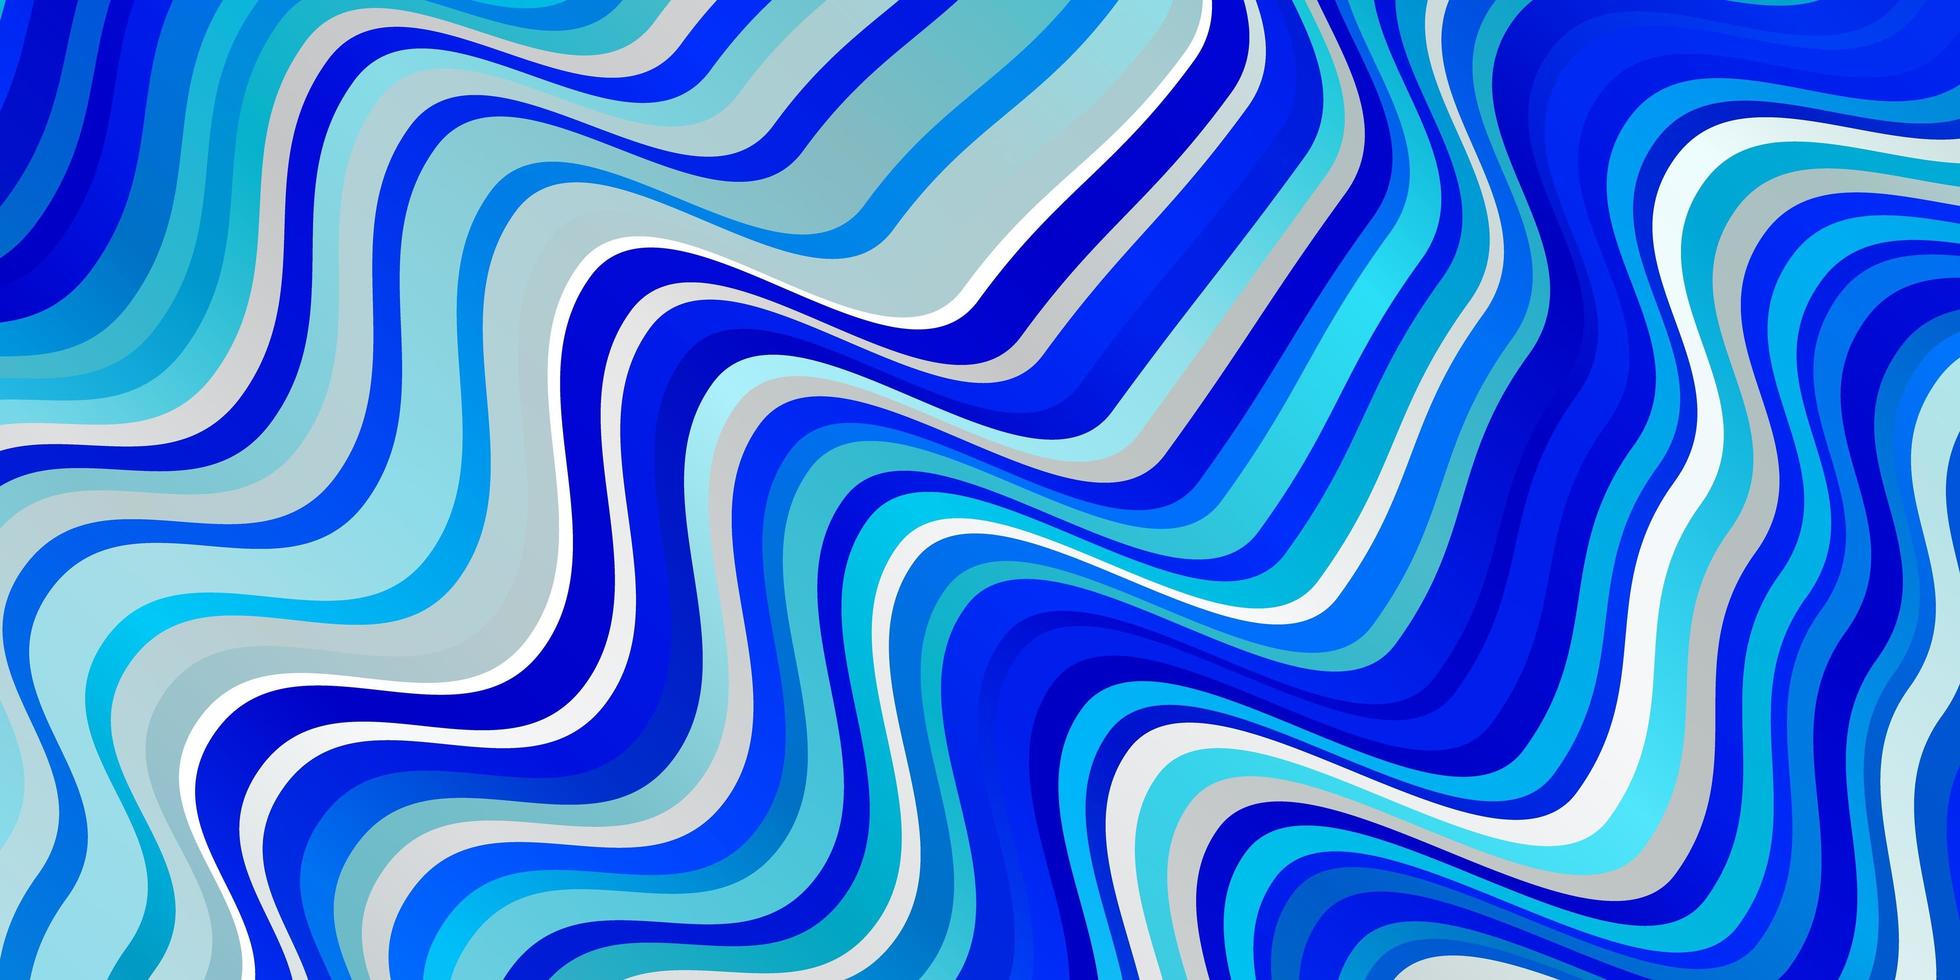 modello vettoriale azzurro con linee ironiche